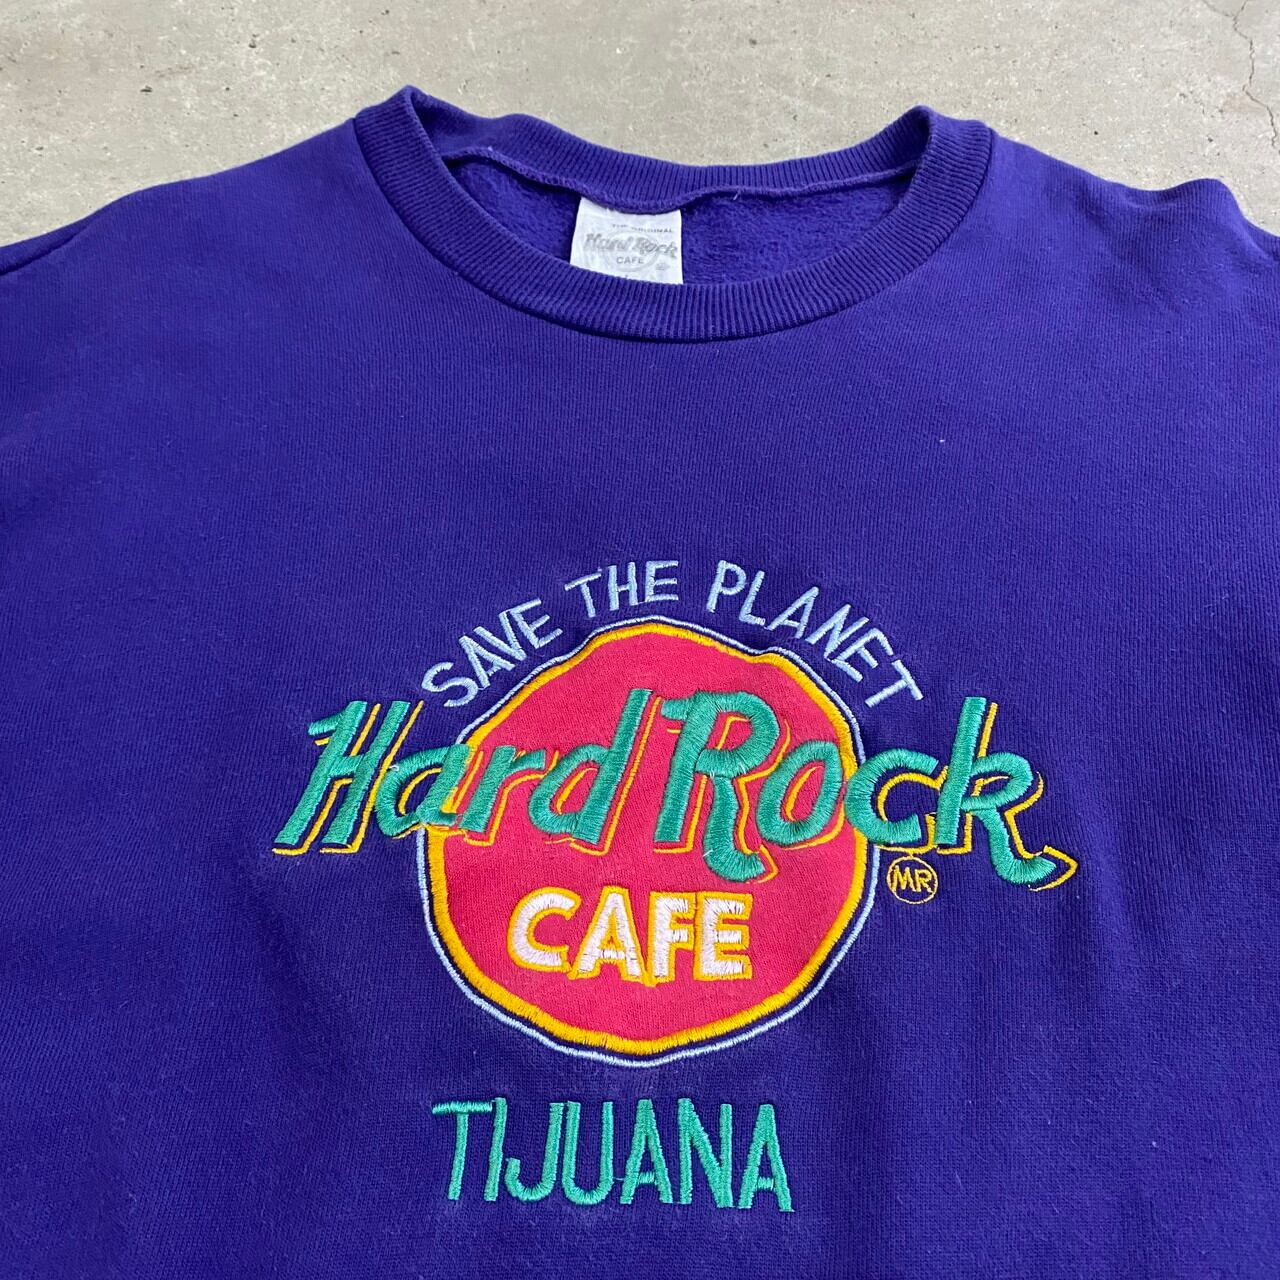 Hard Rock Cafe TIJUANA ハードロックカフェ ティフアナ 刺 ...